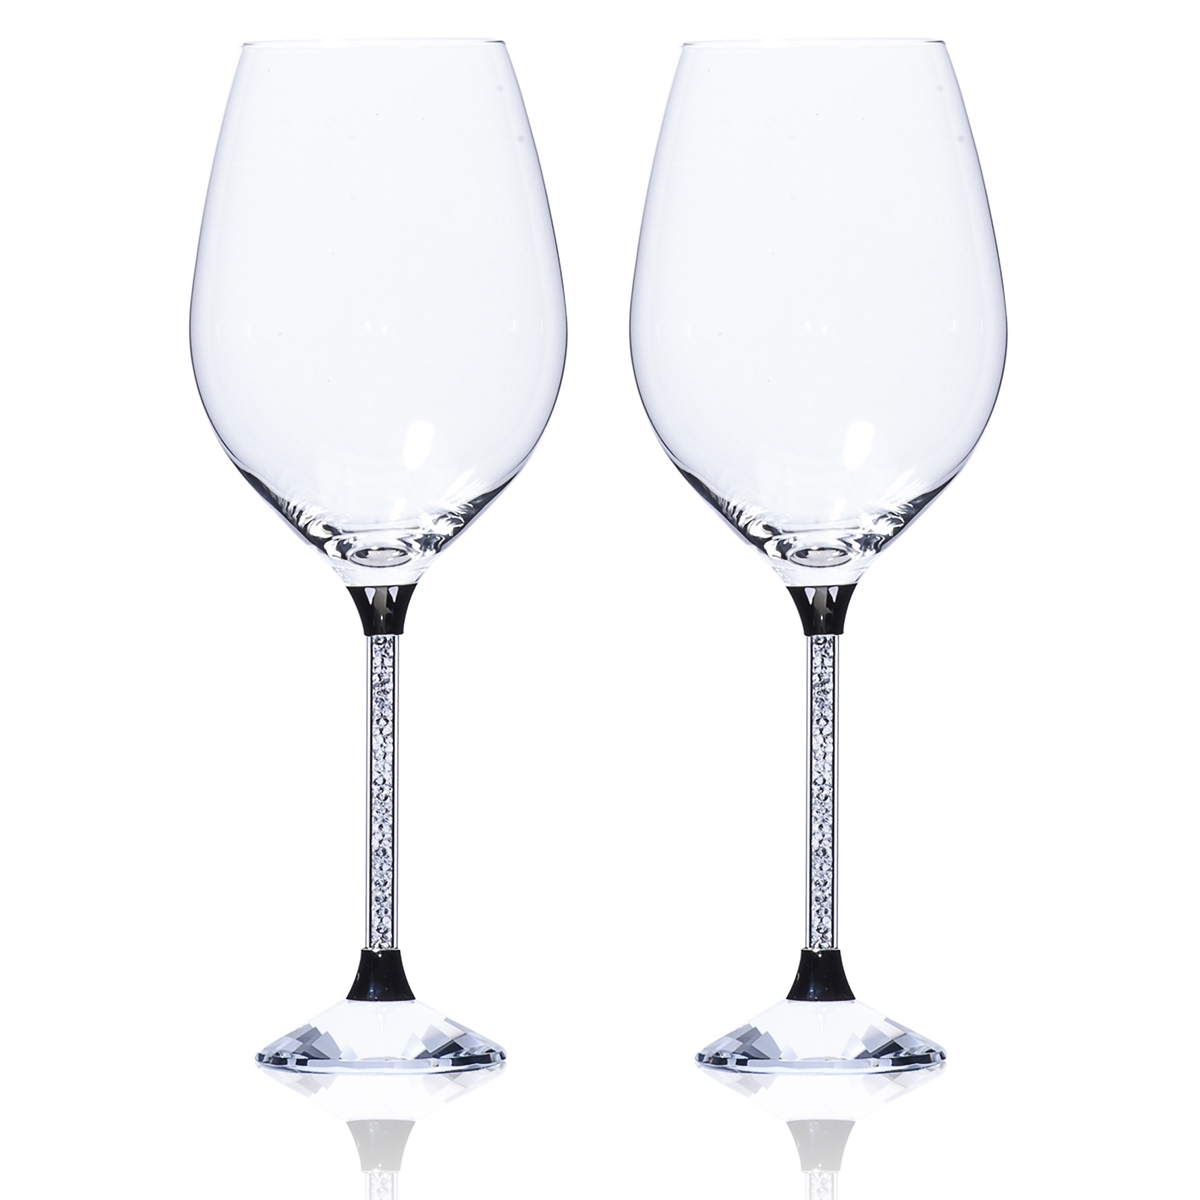 Weinglas 2Stk CASIOPEA Bohemian Grace - Rotweingläser CASIOPEA mit Swarovski Elements im Glasstil